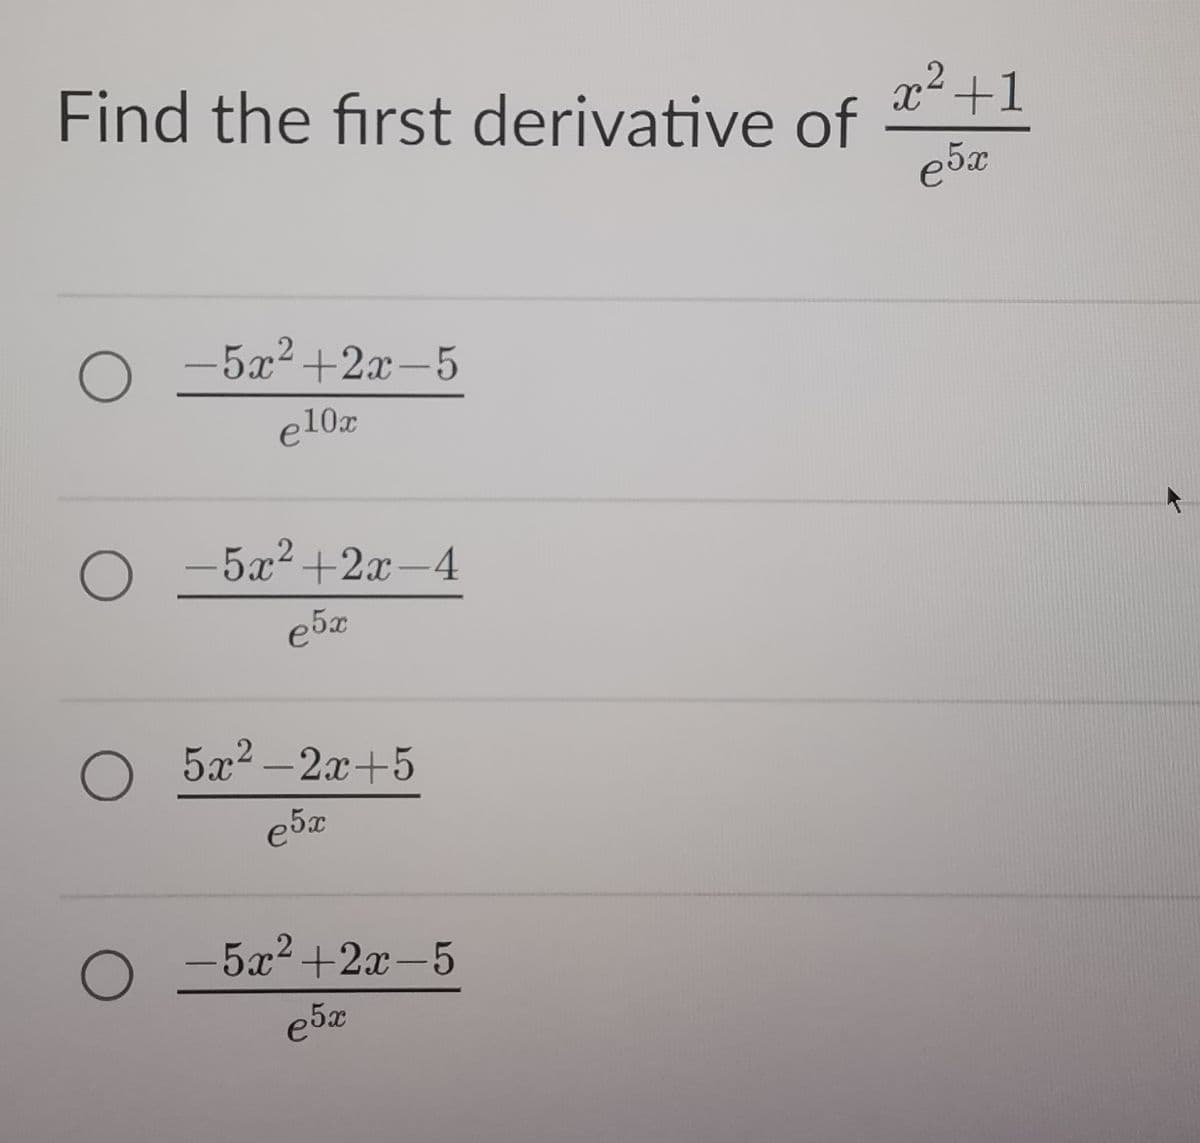 Find the first derivative of
о
-5x²+2x-5
e10x
O
-5x²+2x-4
е5х
2
о
5x² 2x+5
e5x
о -5x2+2x-5
e5x
x2+1
ебх